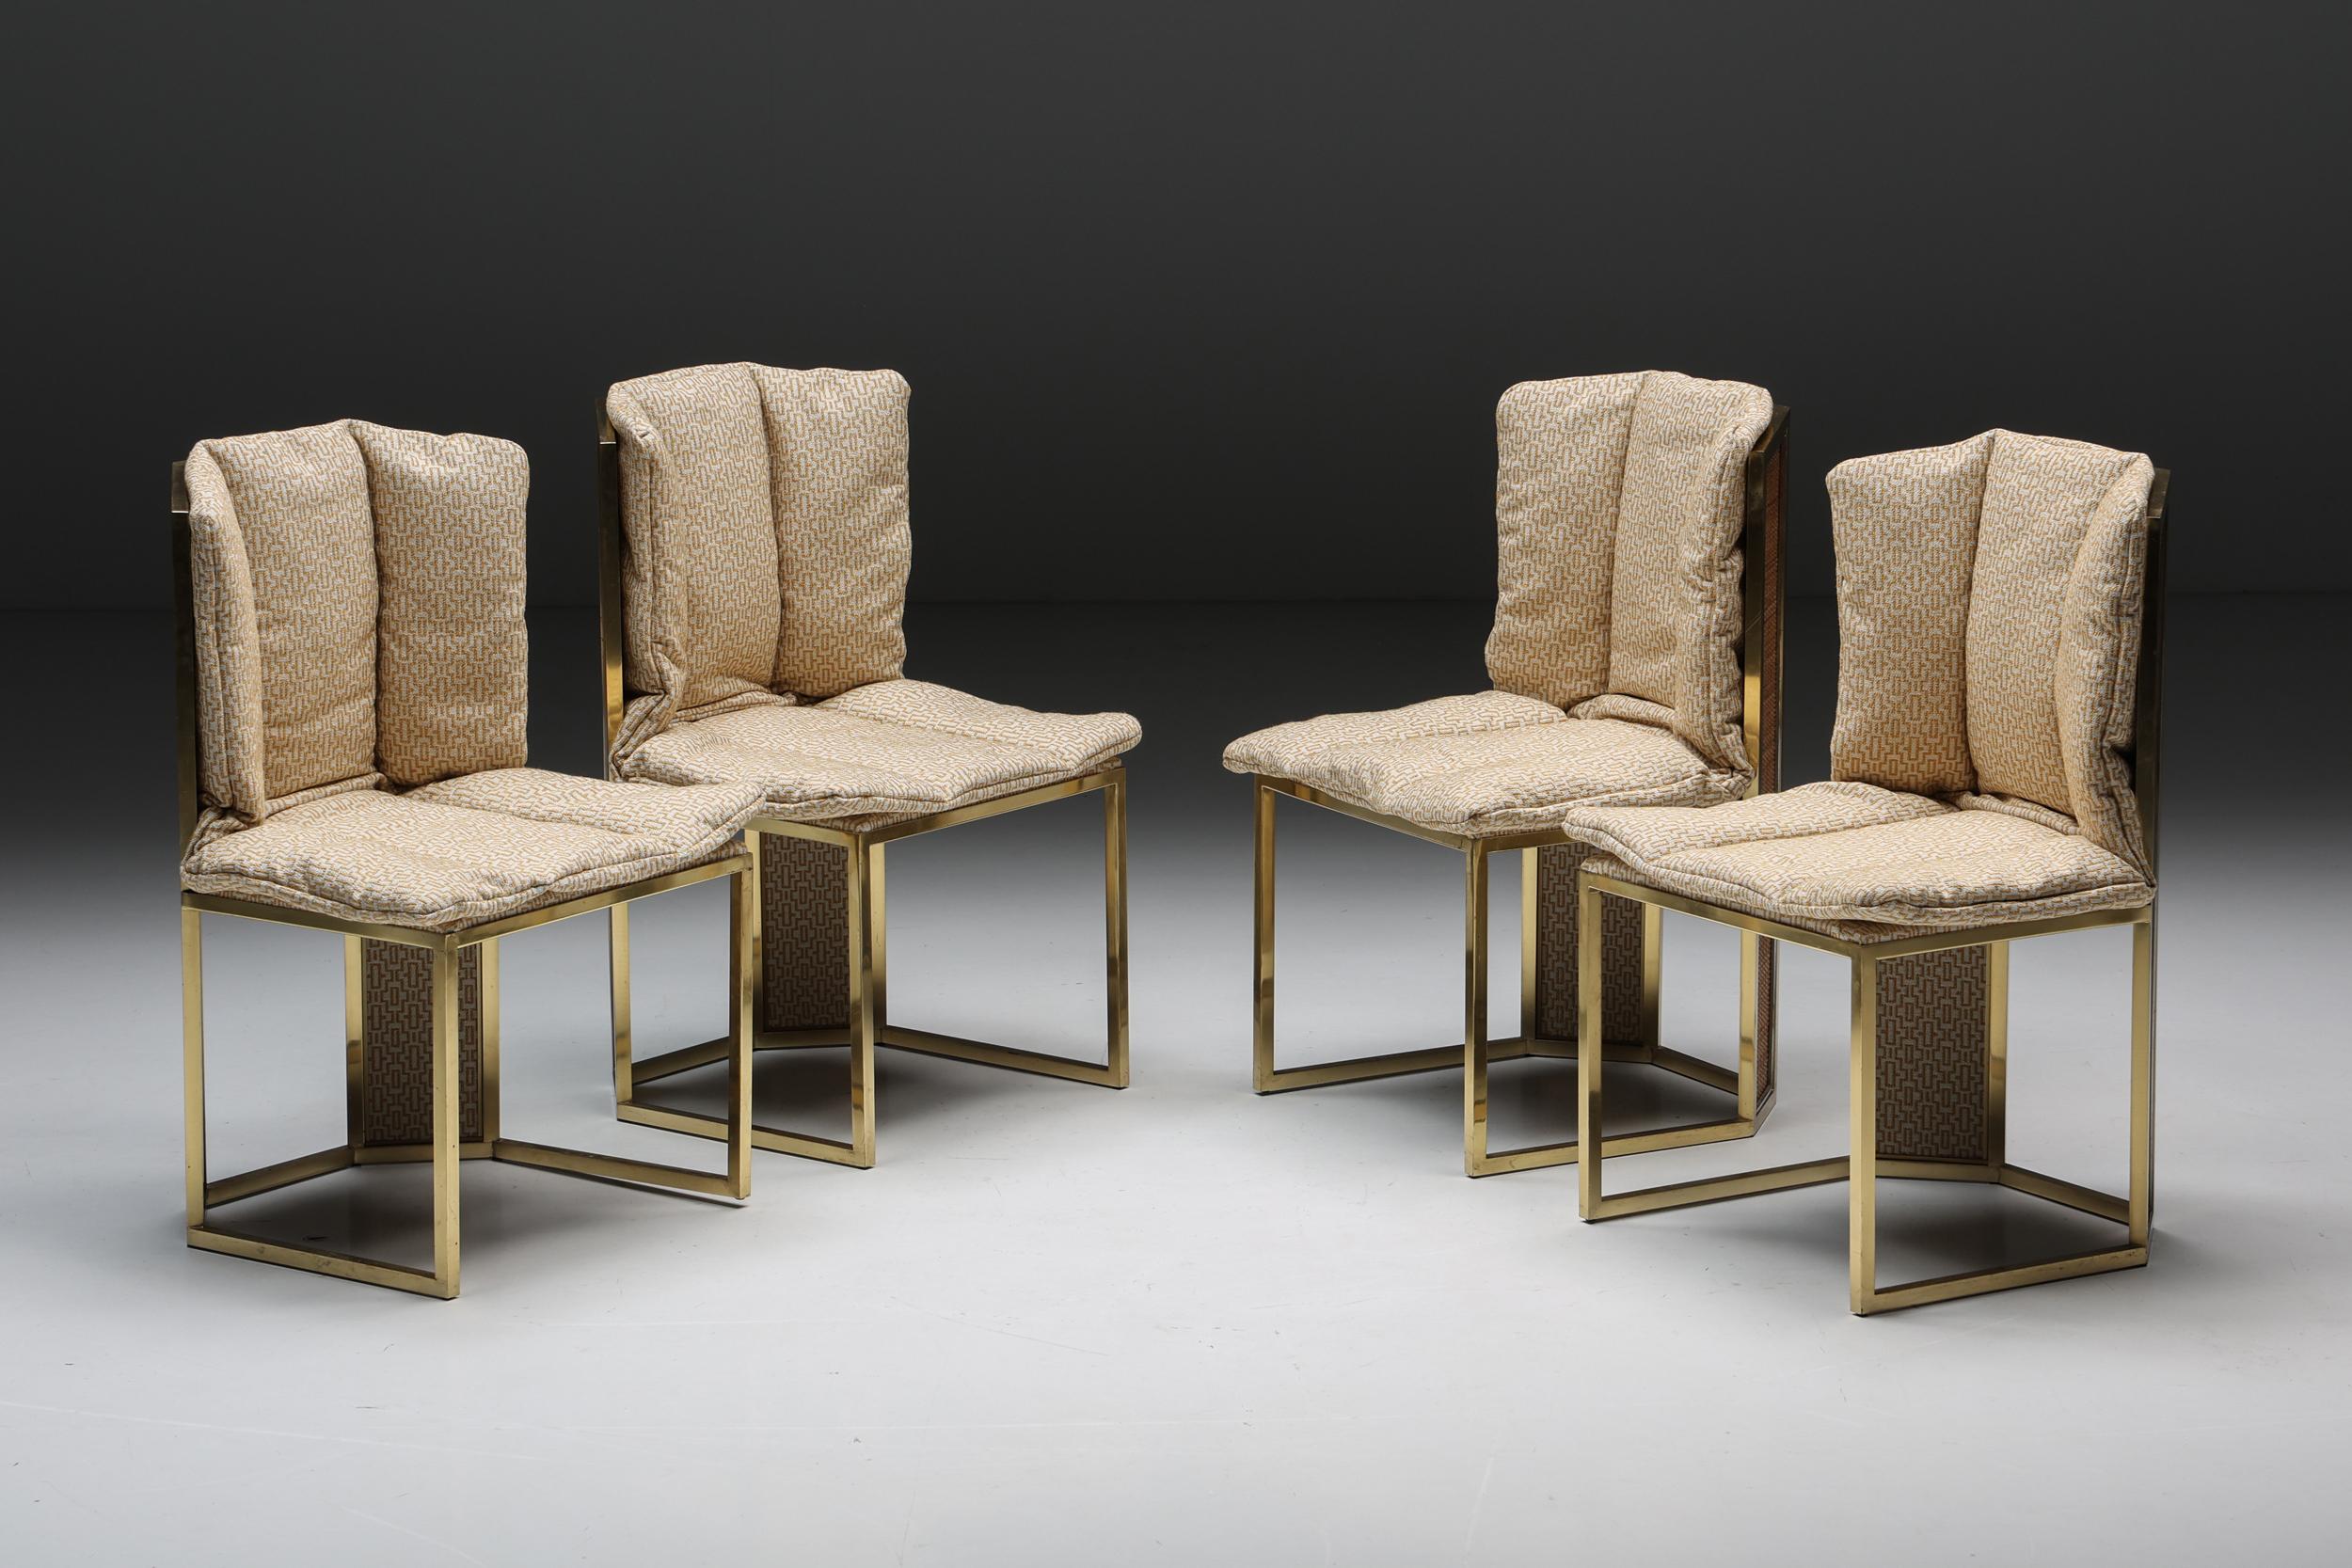 Esszimmerstühle von Romeo Rega, eine wahre Verkörperung der italienischen Handwerkskunst der 1970er Jahre. Diese Stühle spiegeln die Materialien unseres passenden achteckigen Esstisches wider und sind mit poliertem Messing und verchromten Akzenten